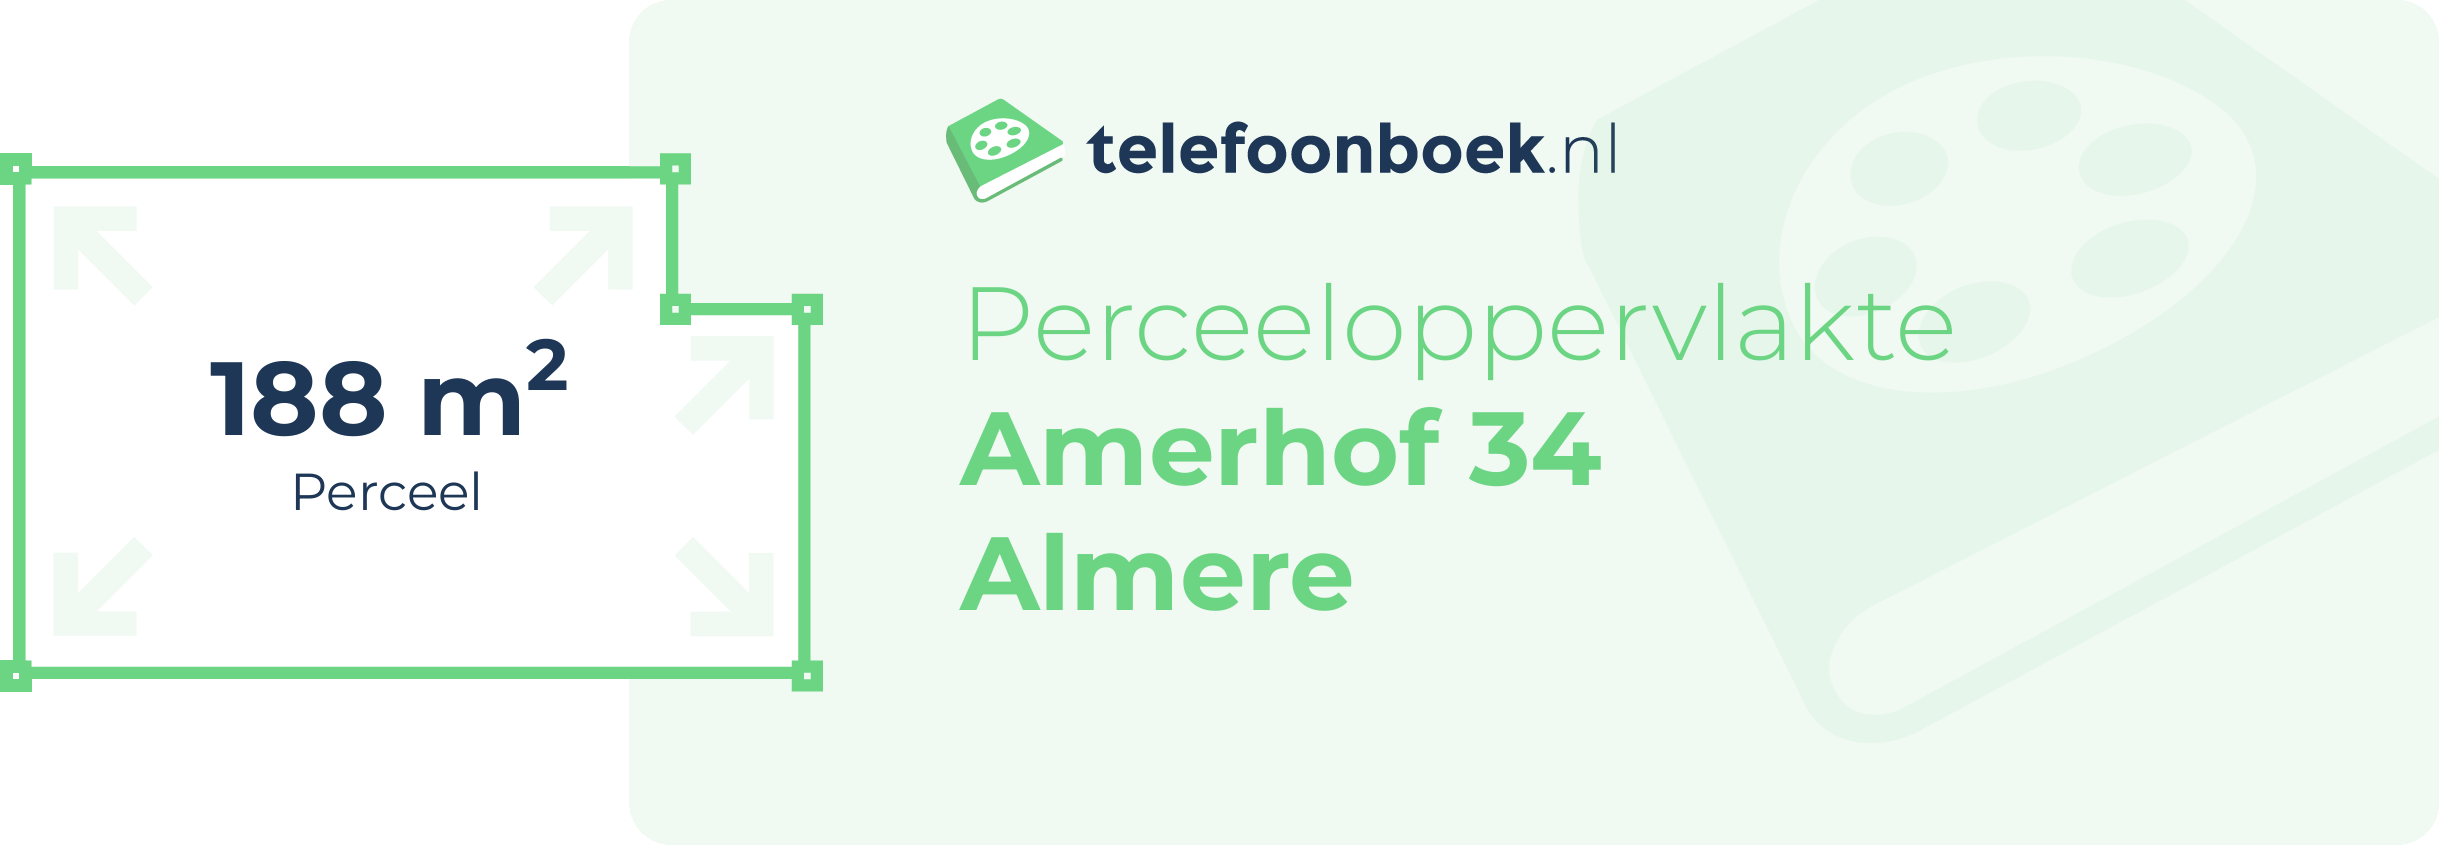 Perceeloppervlakte Amerhof 34 Almere